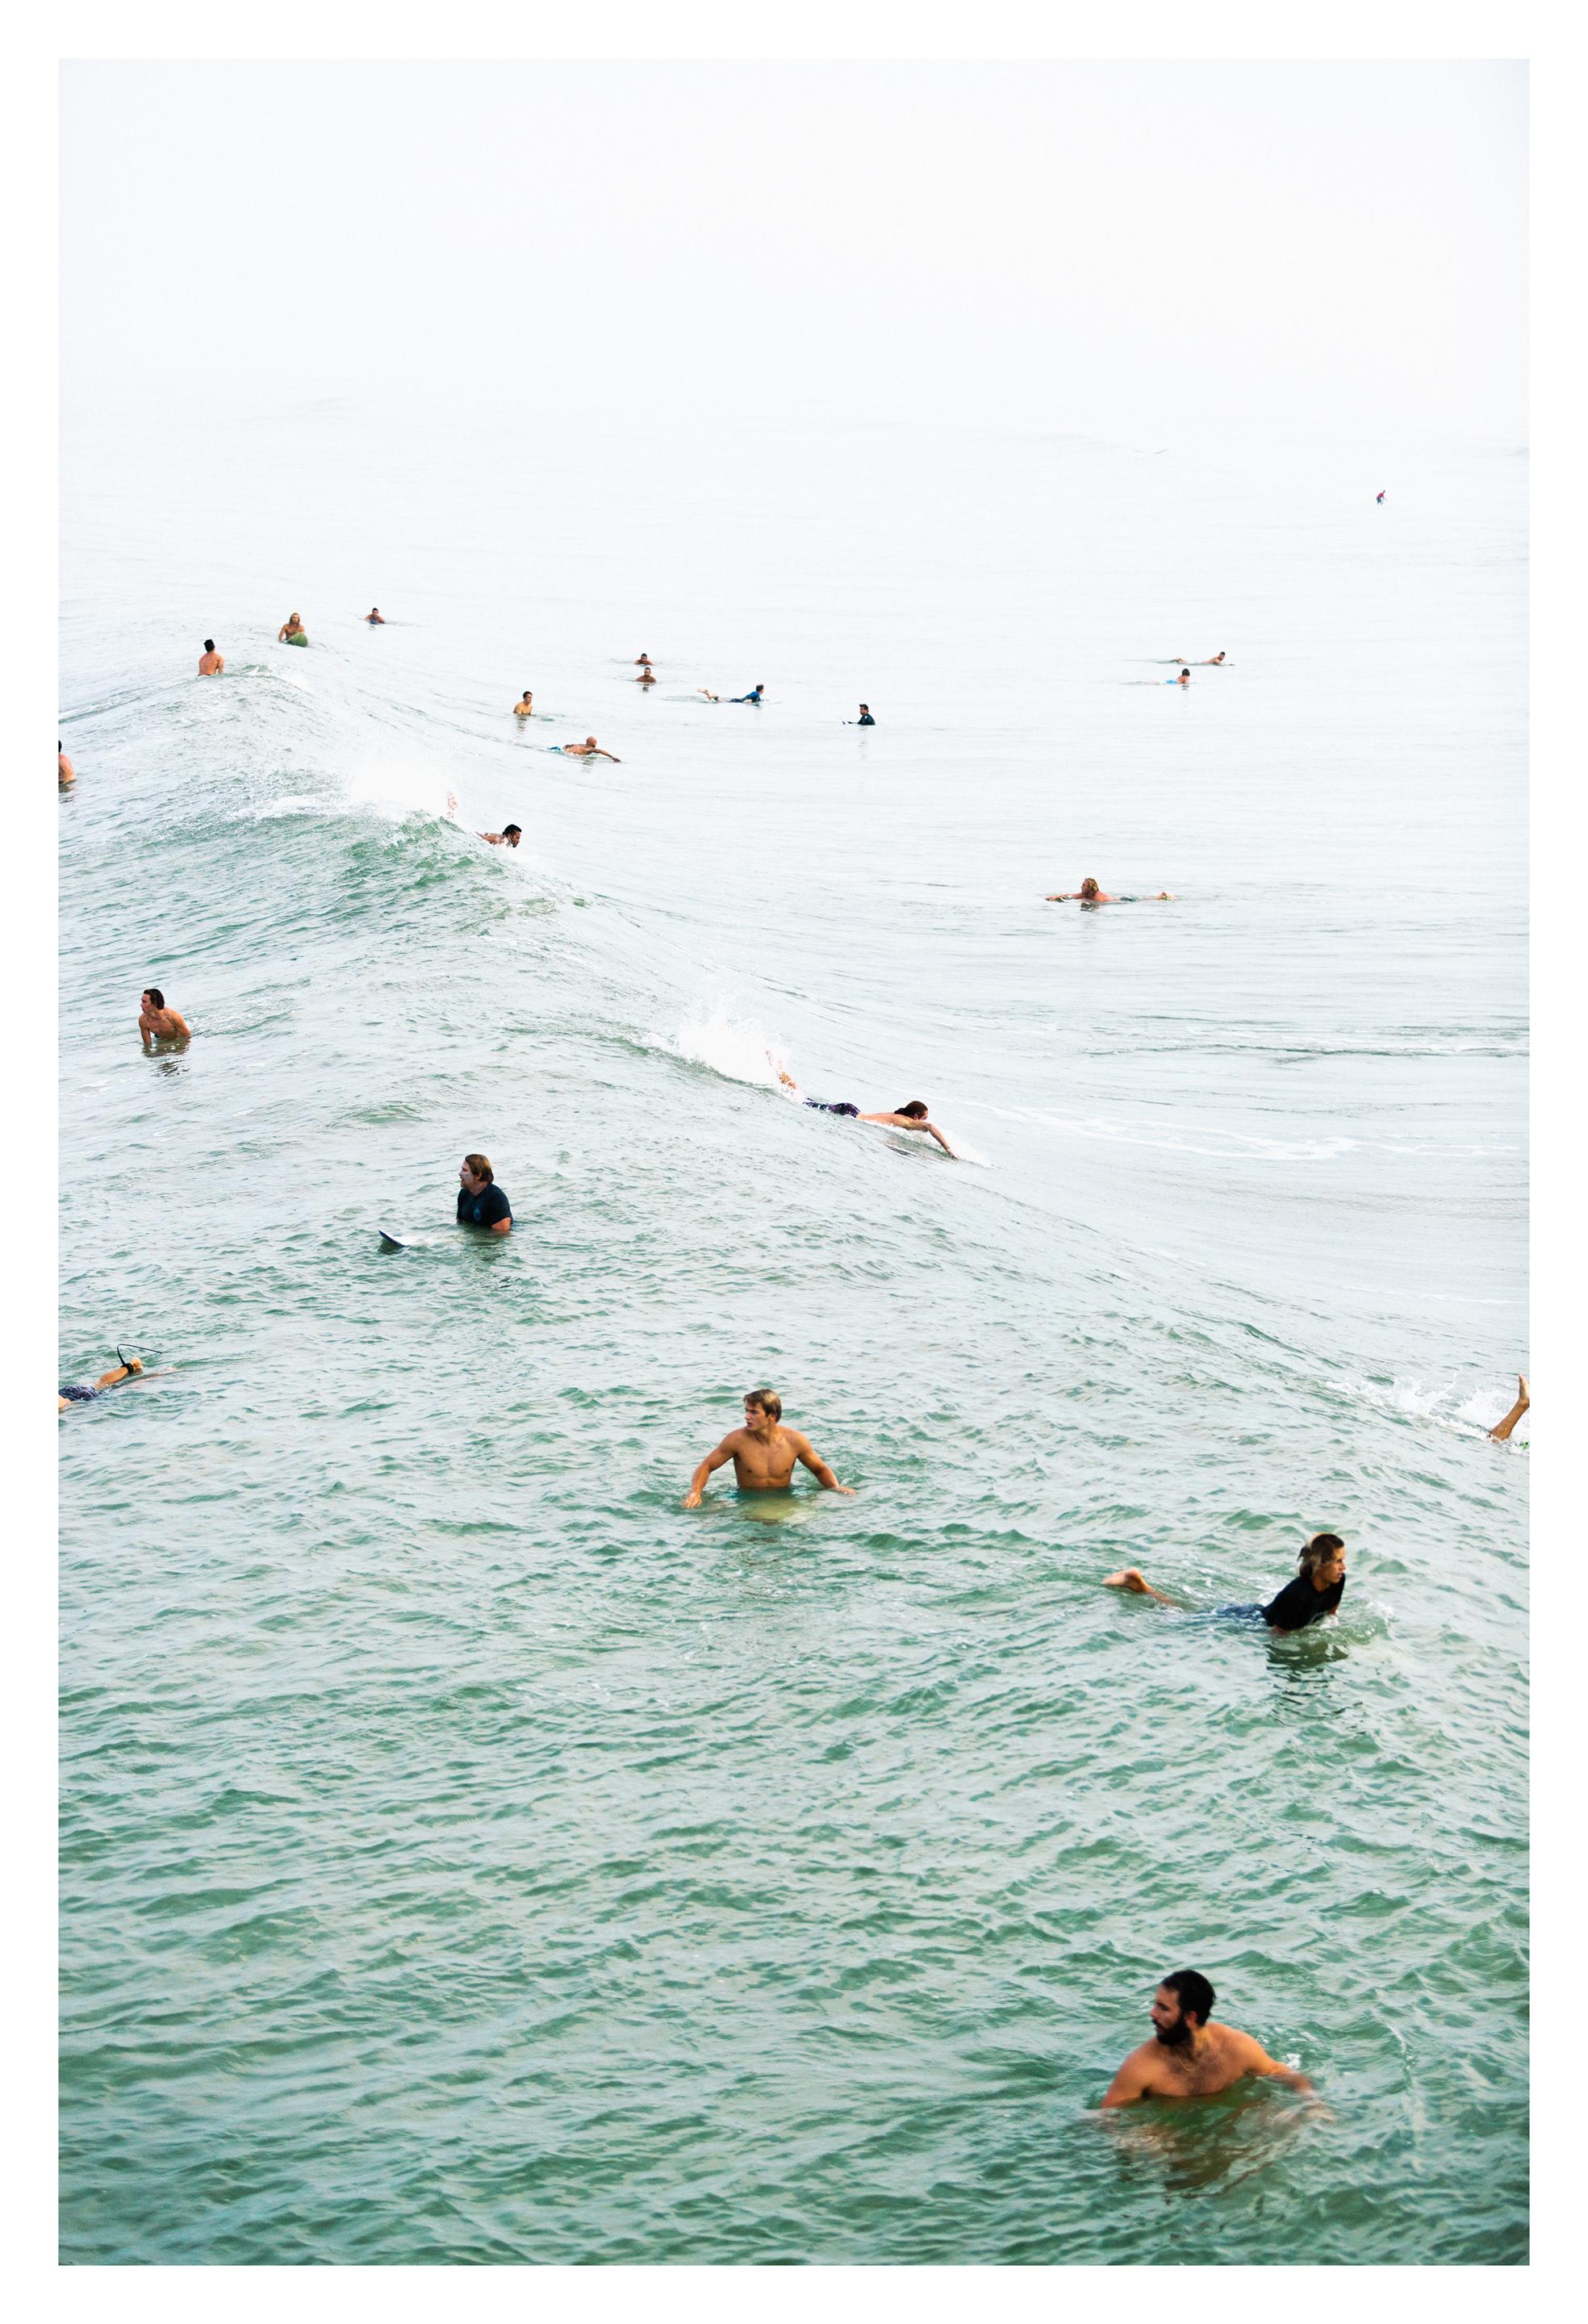 Bewegung III – Surffotografie, Farbdruck in limitierter Auflage, signiert Archival 2016 – Photograph von Juan Lamarca